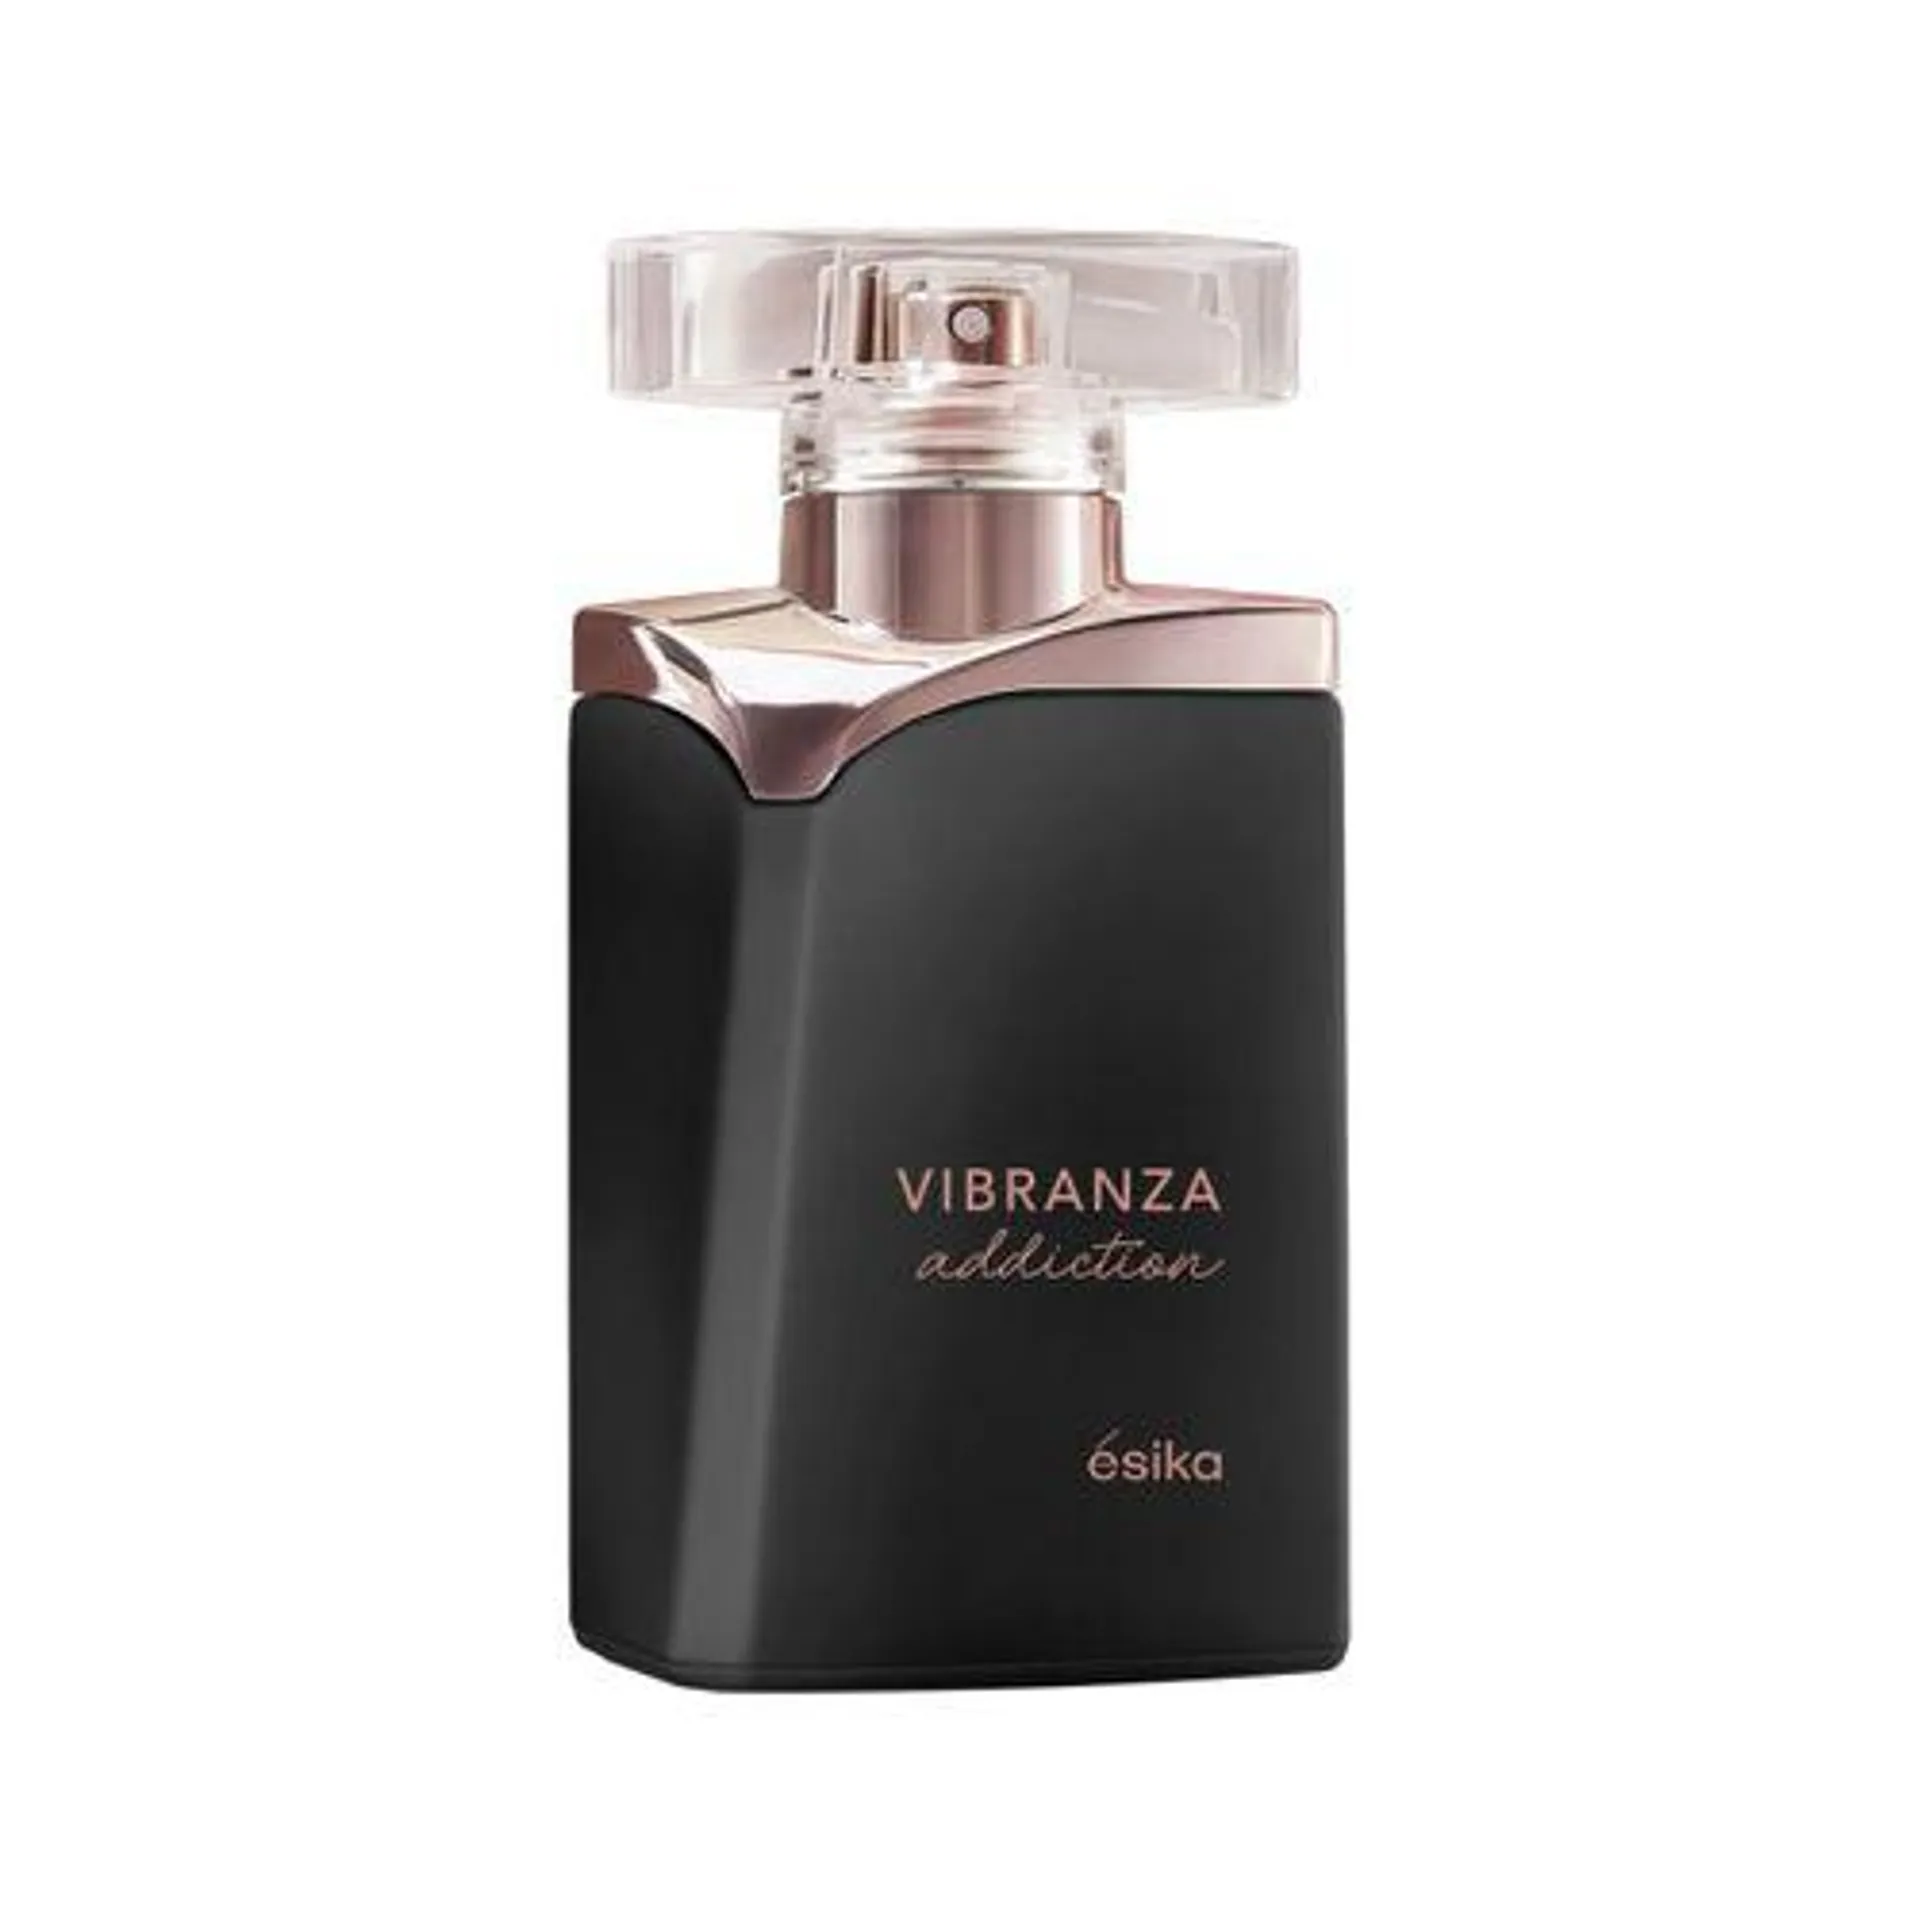 Vibranza Addiction Perfume de Mujer, 45ml